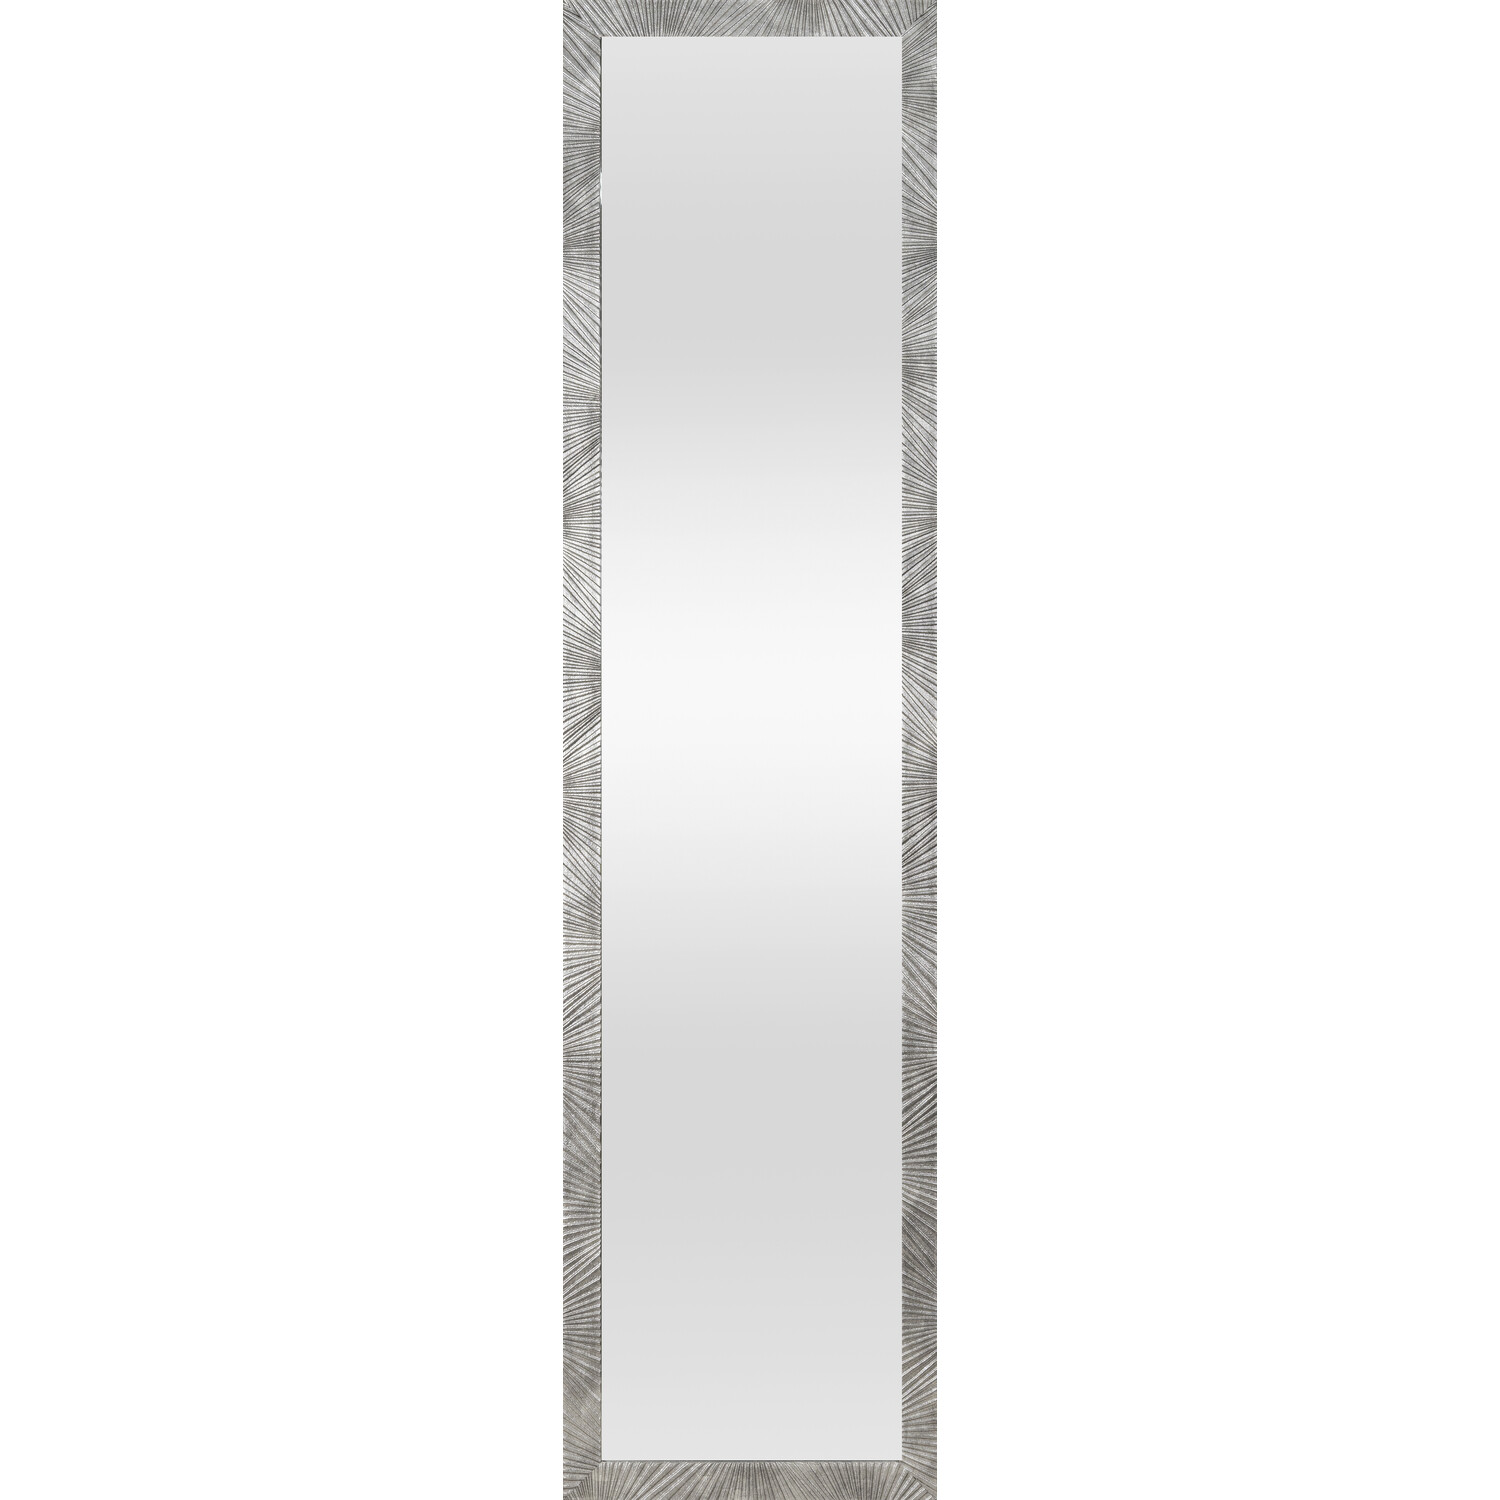 Capri Silver Dress Mirror Image 1